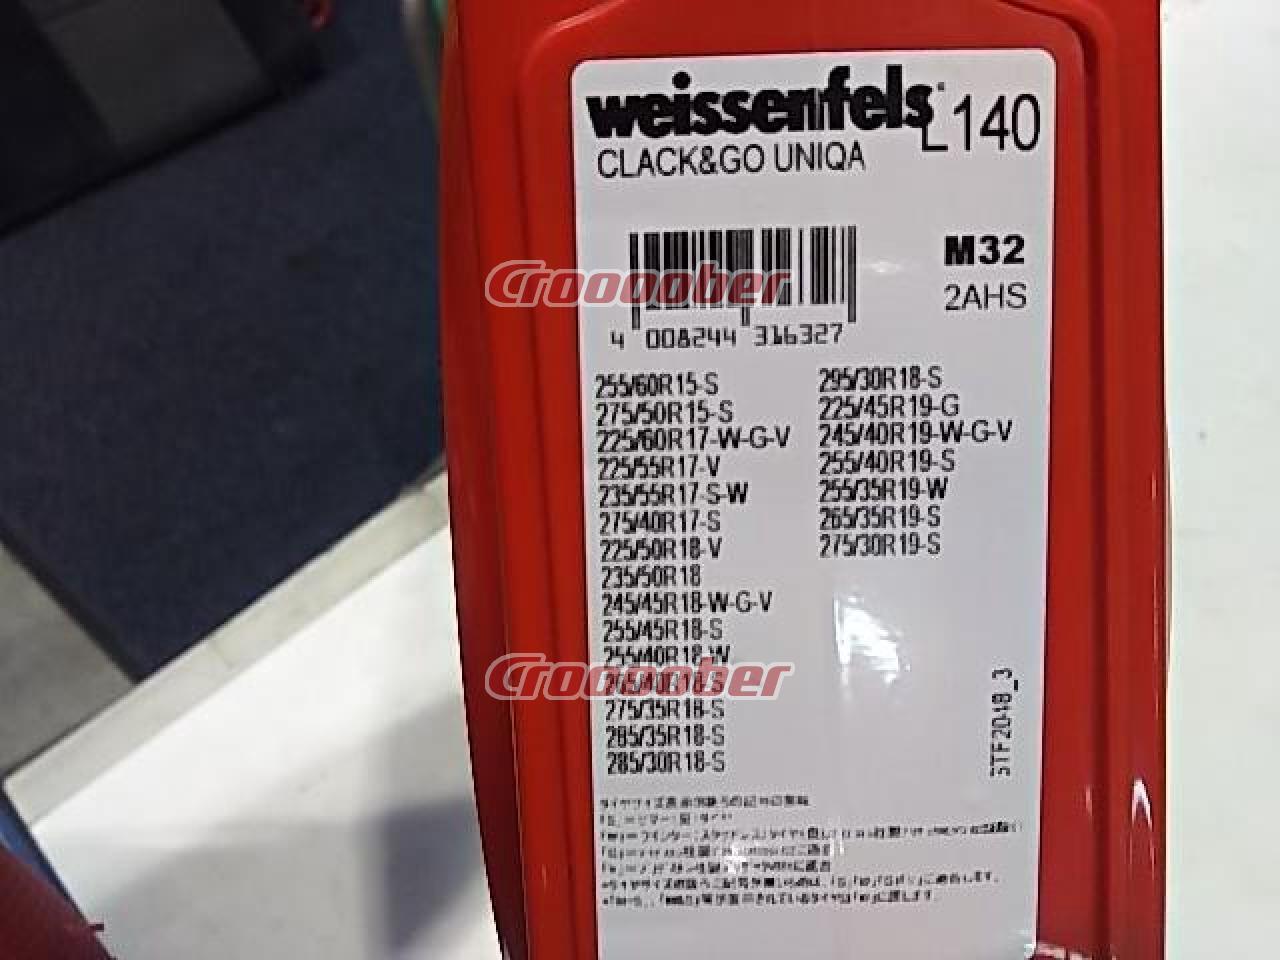 weissenfels(バイセンフェルス) クラックゴー ユニカM32 L140 金属チェーン 未使用 開封有り | タイヤホイール関連 チェーンパーツの通販なら  | Croooober(クルーバー)